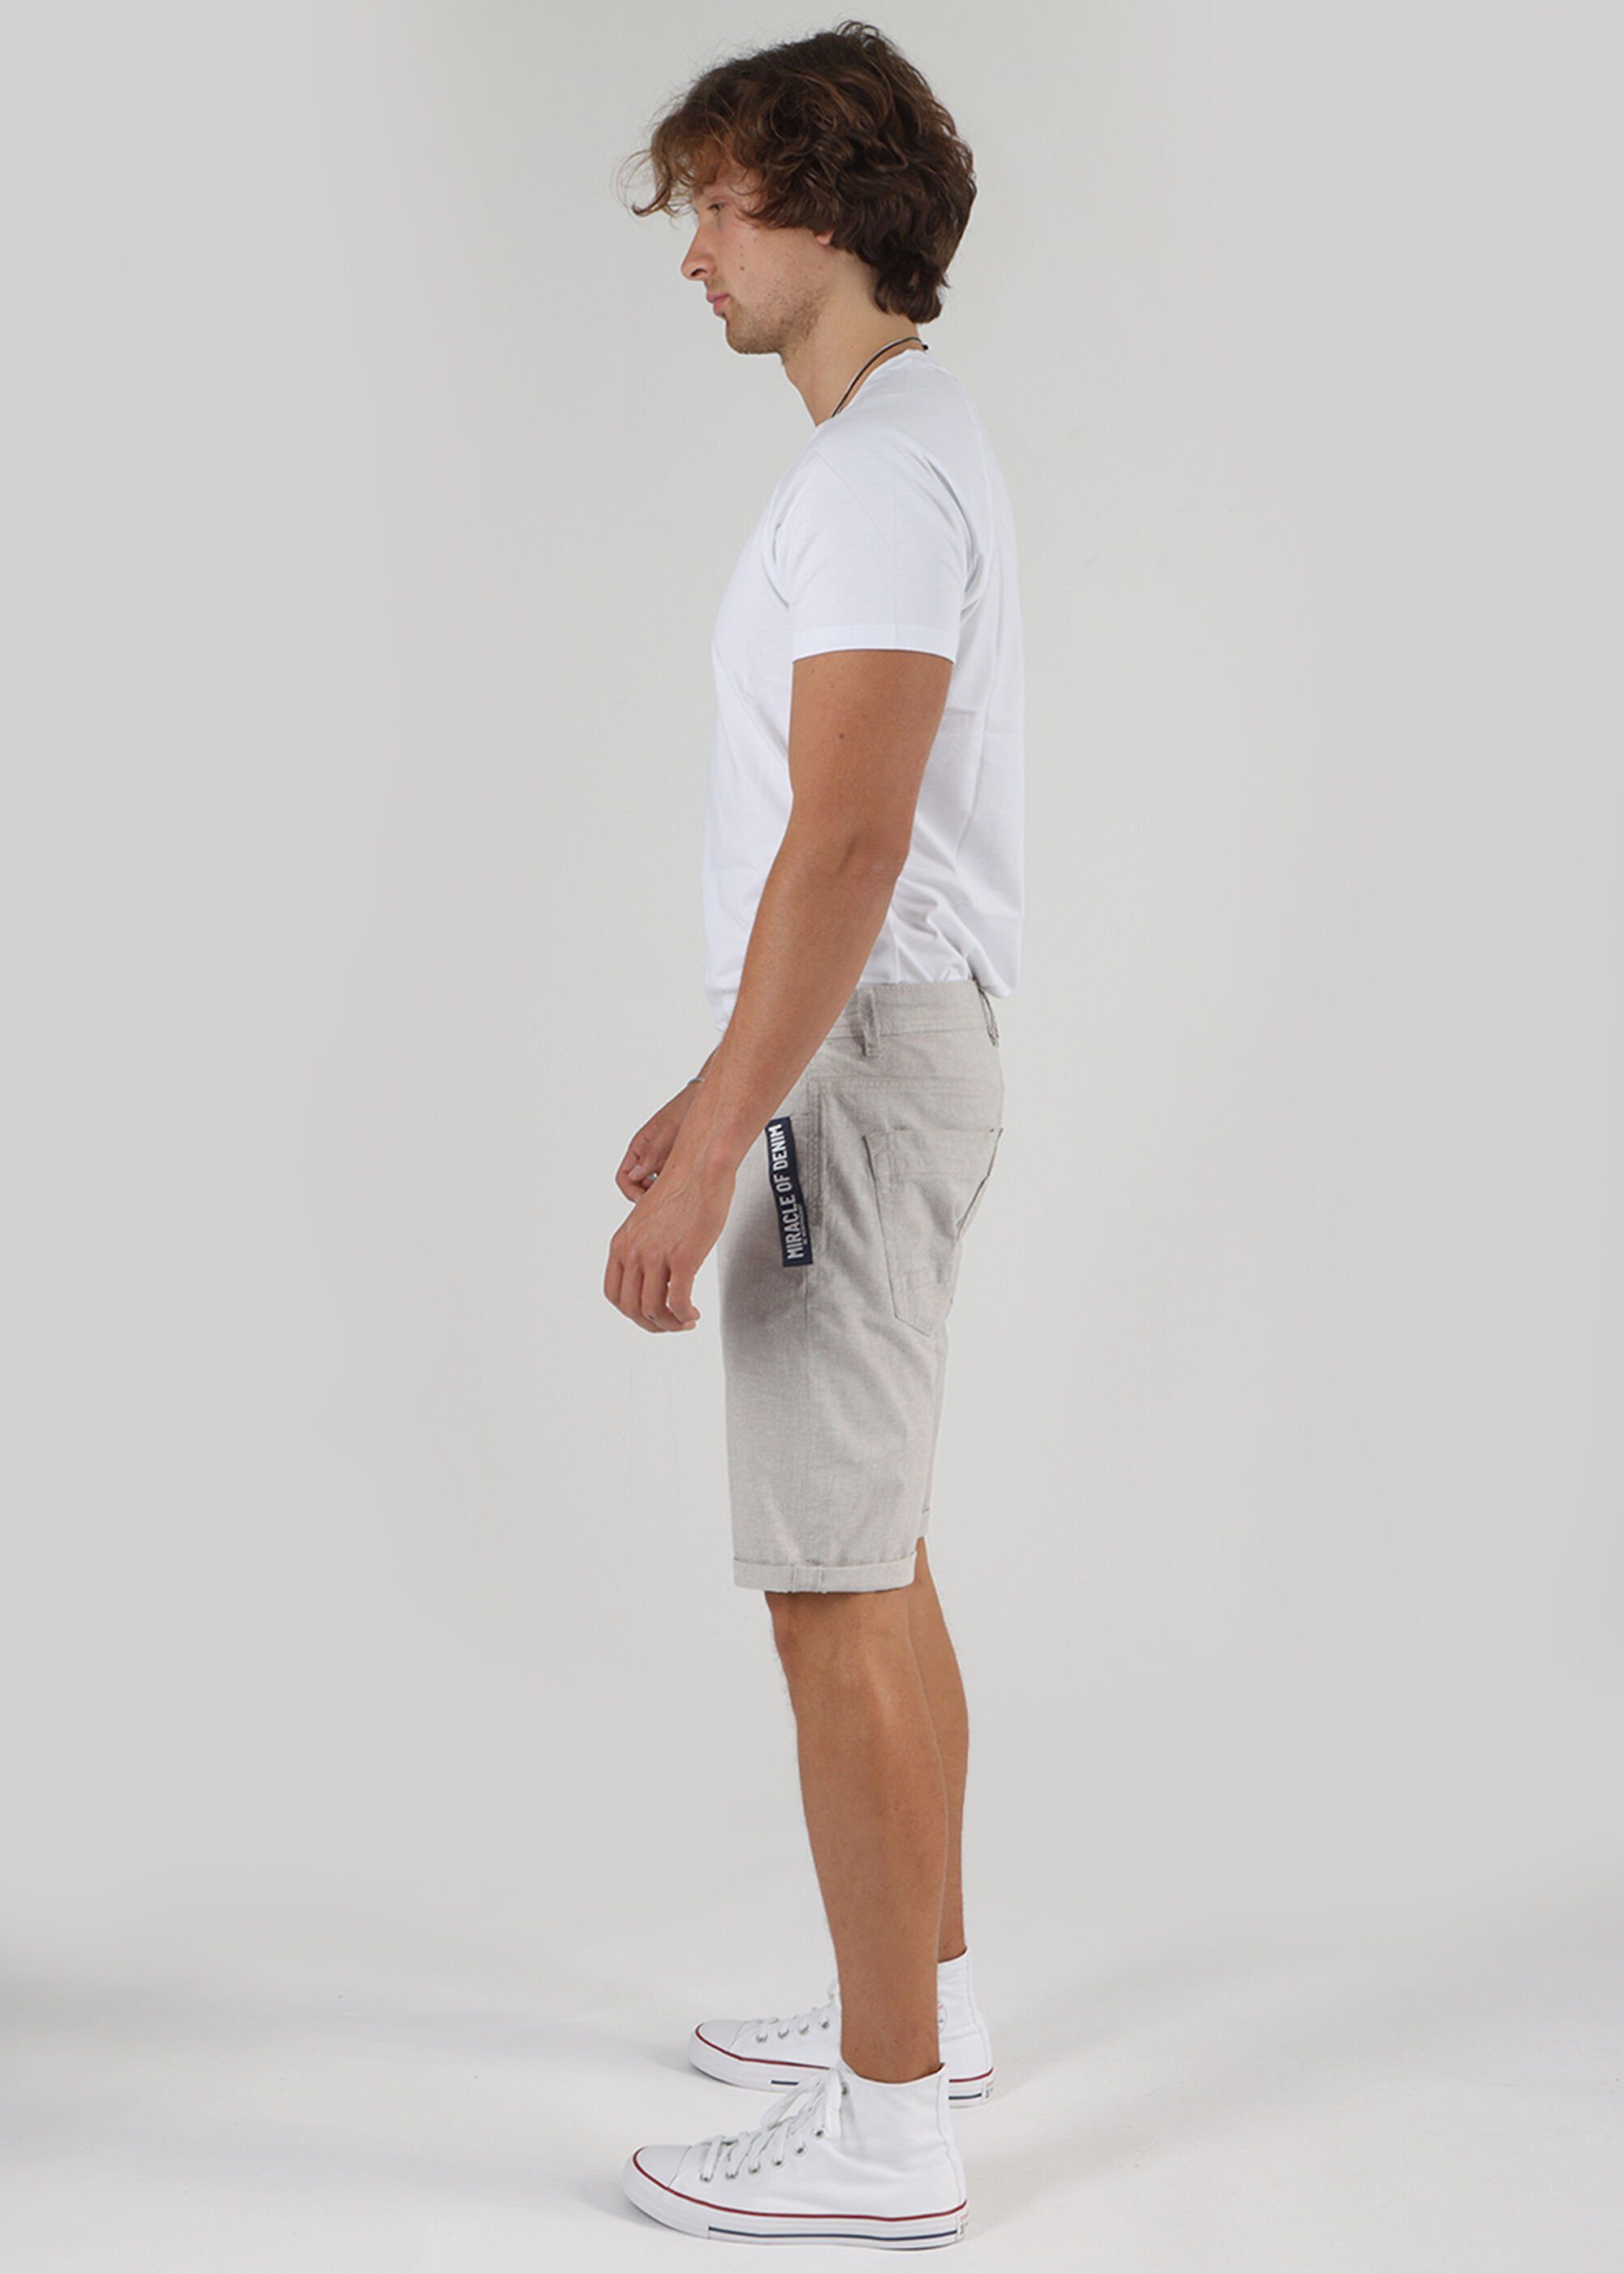 Pocket Thomas Miracle Style Grey Denim 5 Shorts Light of Stripe im Shorts